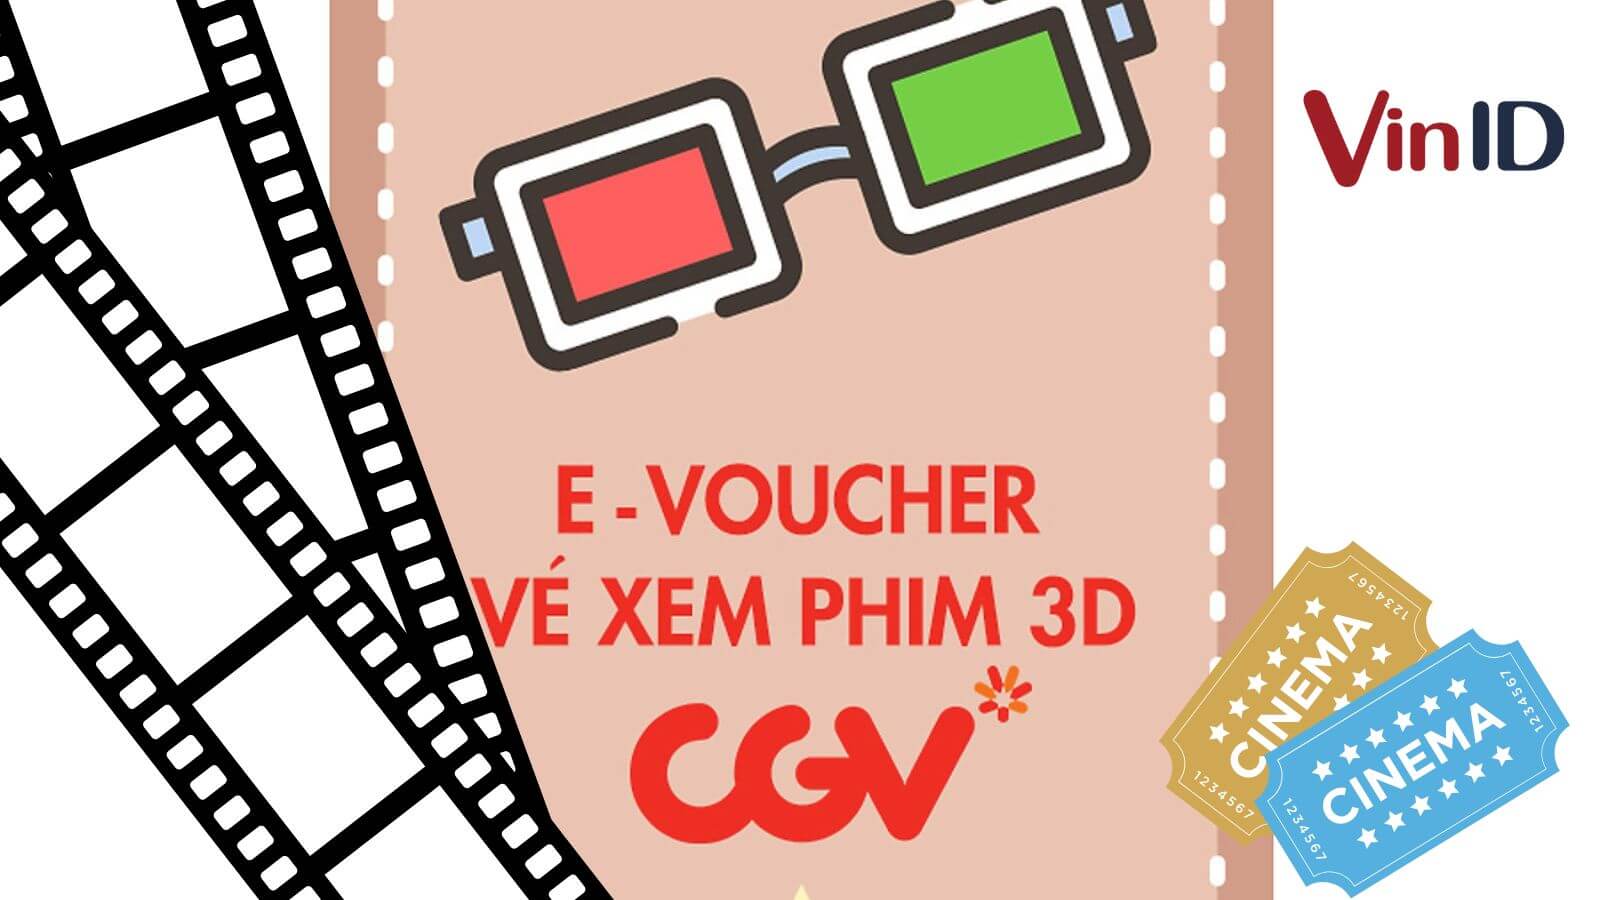 Hướng dẫn chi tiết cách đặt vé xem phim tại app CGV Cinemas  Adesvn